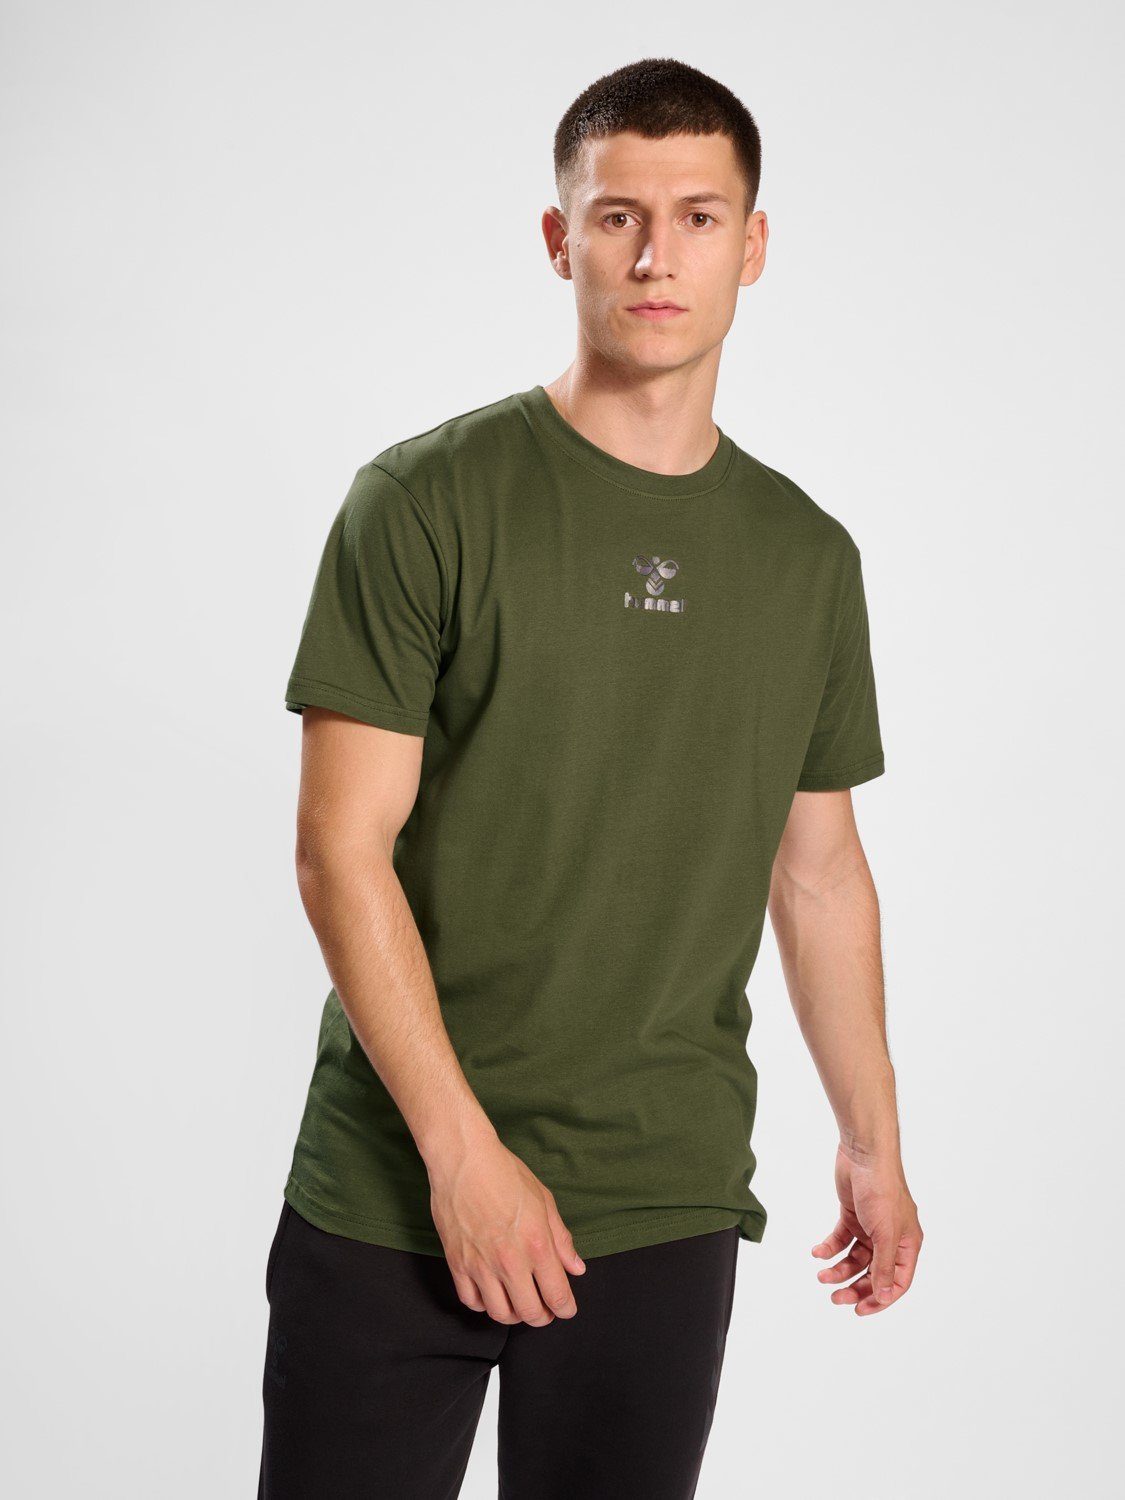 Funktionsshirt in T-Shirt Olive 5788 Sport Kurzarm hummel Jersey T-Shirt